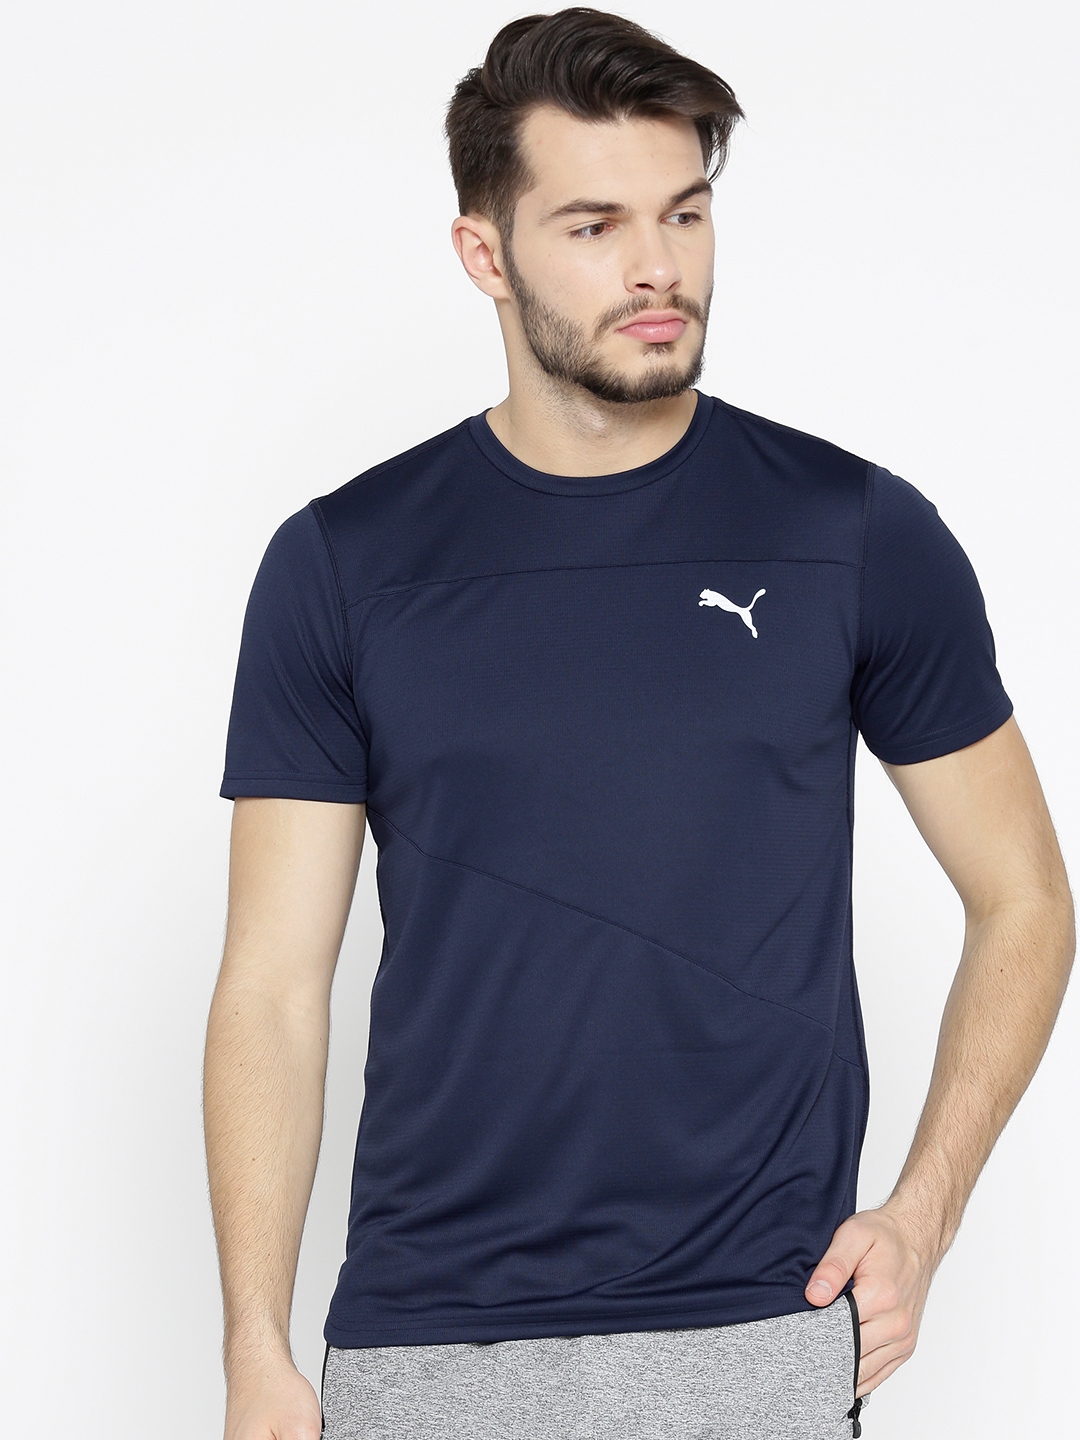 Buy Puma Men Navy Blue Solid Ignite Shirt - Tshirts for Men 8751673 |